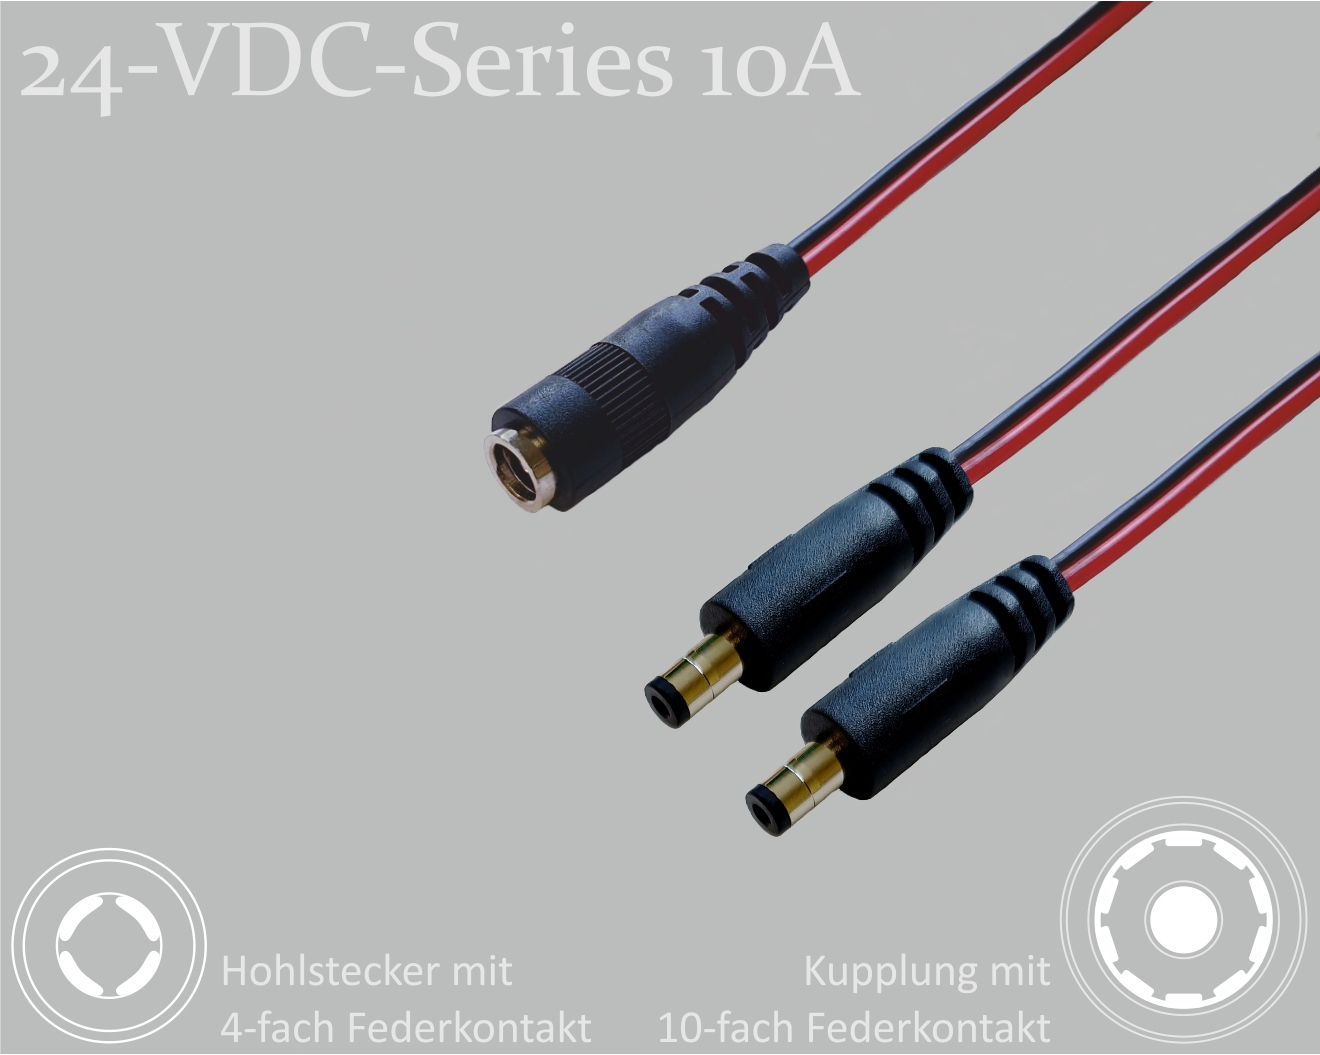 24-VDC-Series 10A, DC-Verteiler 1x DC-Kupplung mit 10-Federkontakt auf 2x DC-Stecker mit 4-Federkontakt,  2,5x5,5mm, Flachkabel 2x0,75mm², rot/schwarz, 0,3m